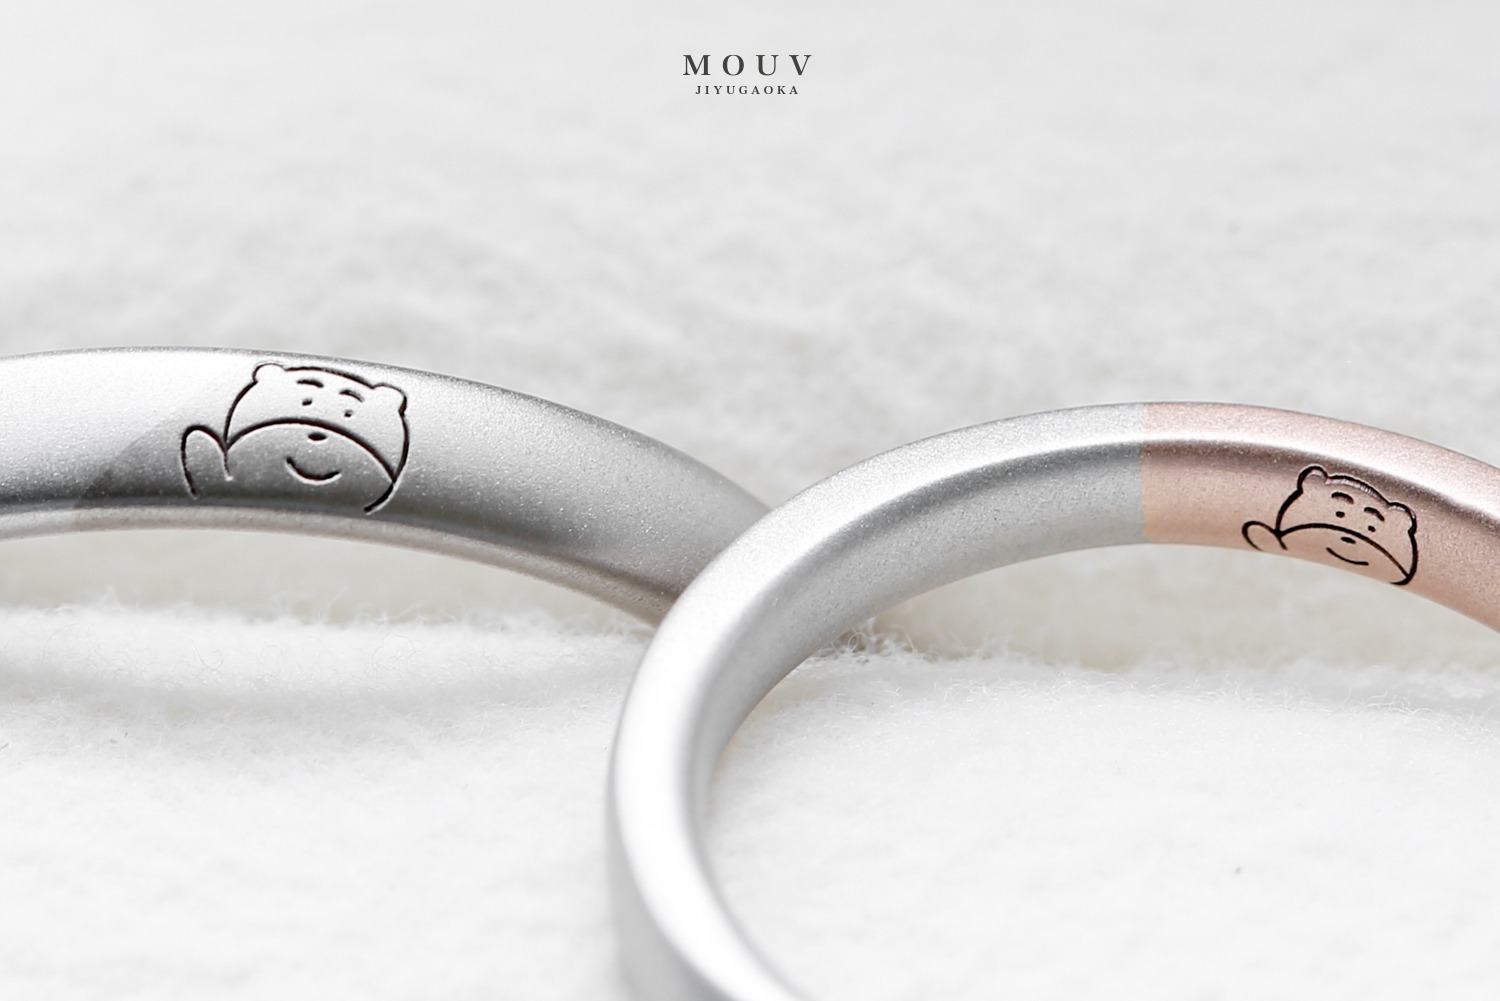 レーザー刻印 文字入れについて 手作り結婚指輪 婚約指輪 モーブ Mouv 自由が丘